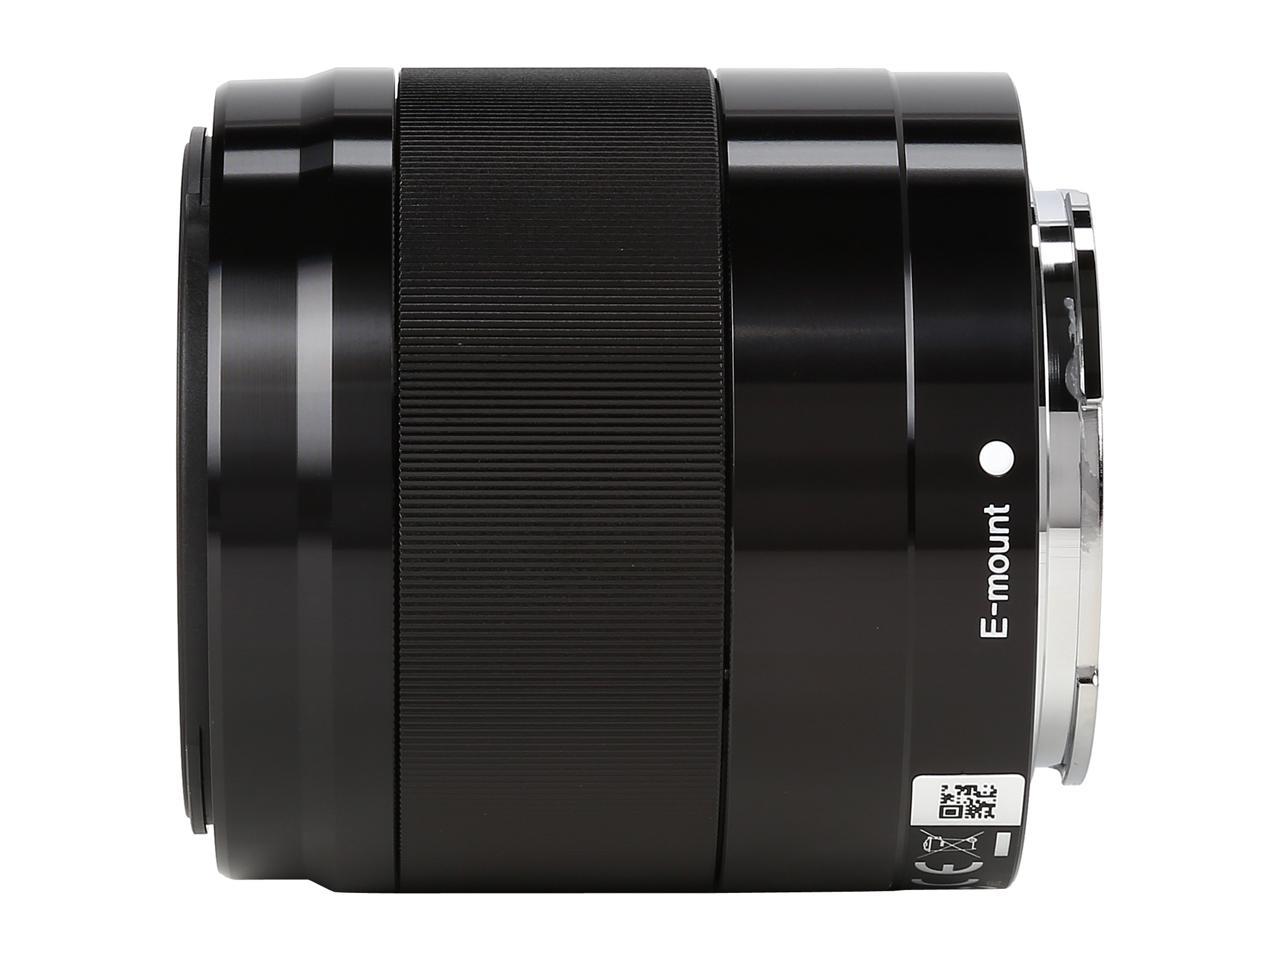 SONY SEL50F18/B Compact ILC Lenses 50mm F1.8 OSS Lens Black